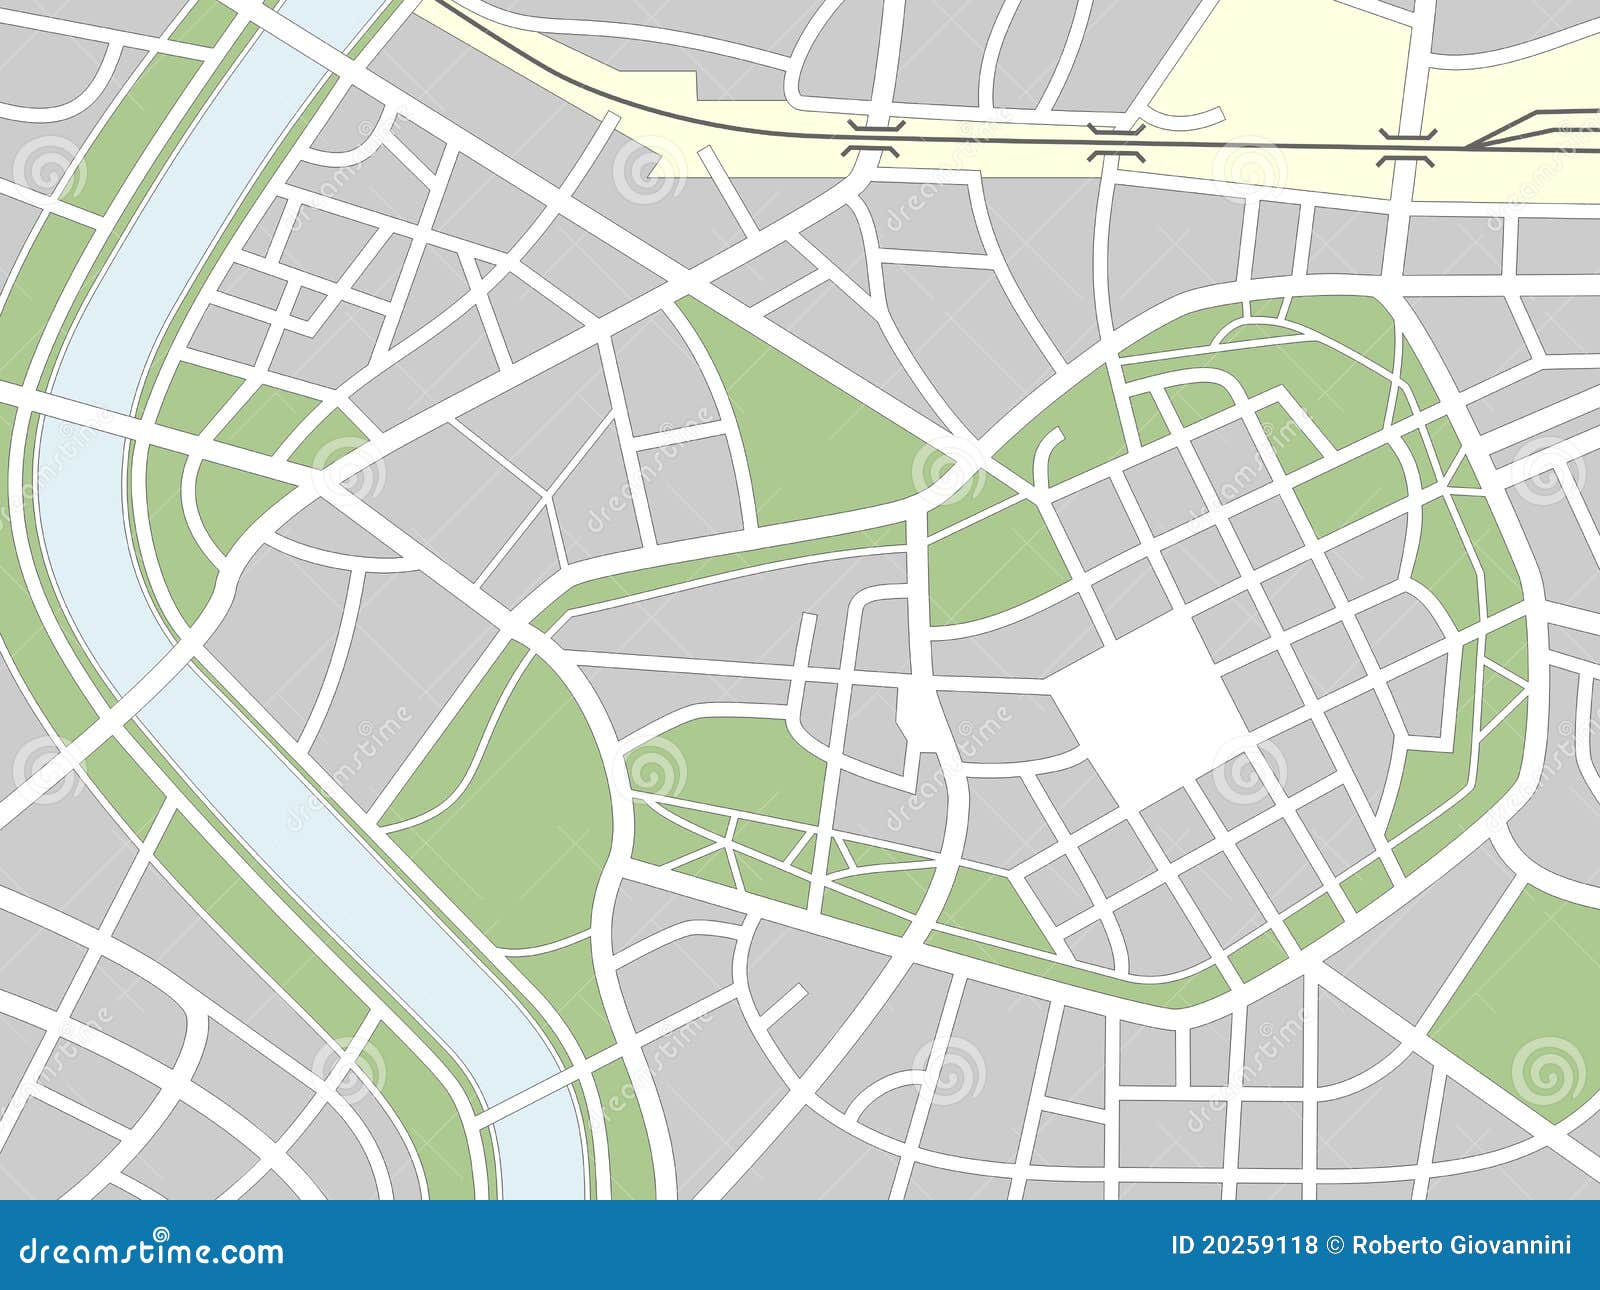 Nameless City Map Stock Illustrations – 20 Nameless City Map Stock For Blank City Map Template